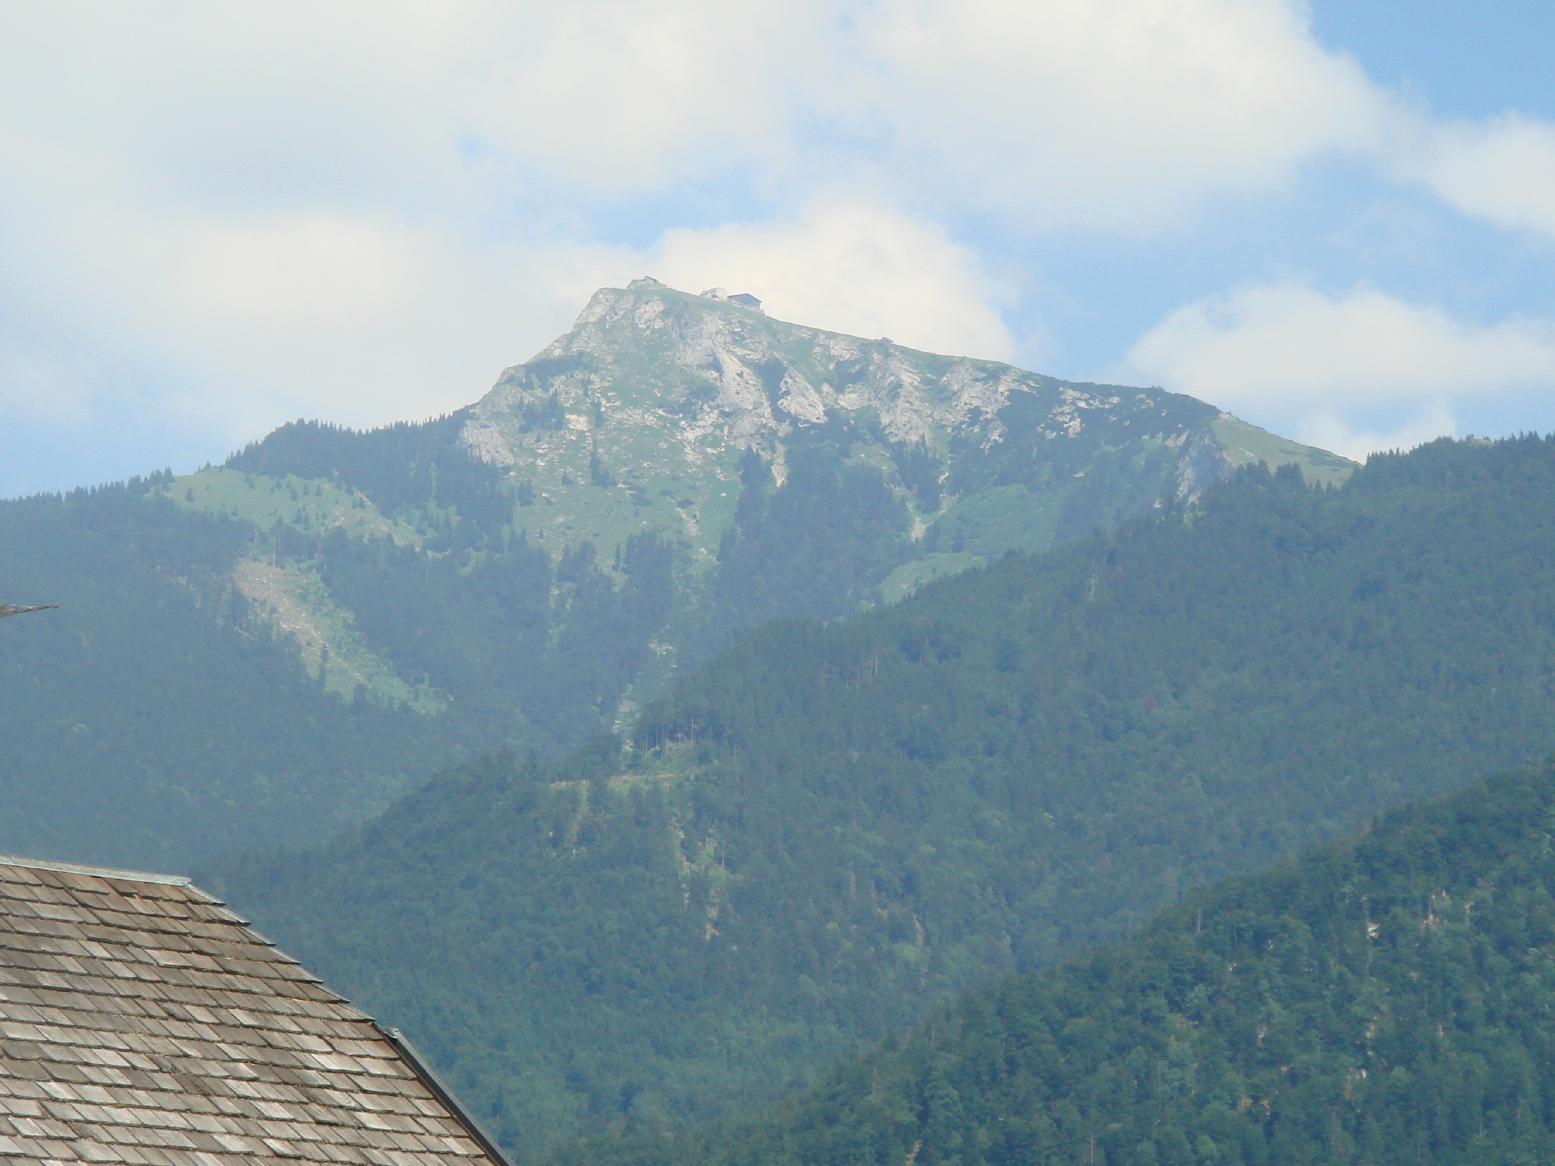 山の頂あたりに小屋のようなものが見える。サウンドオブミュージックに使われた山。